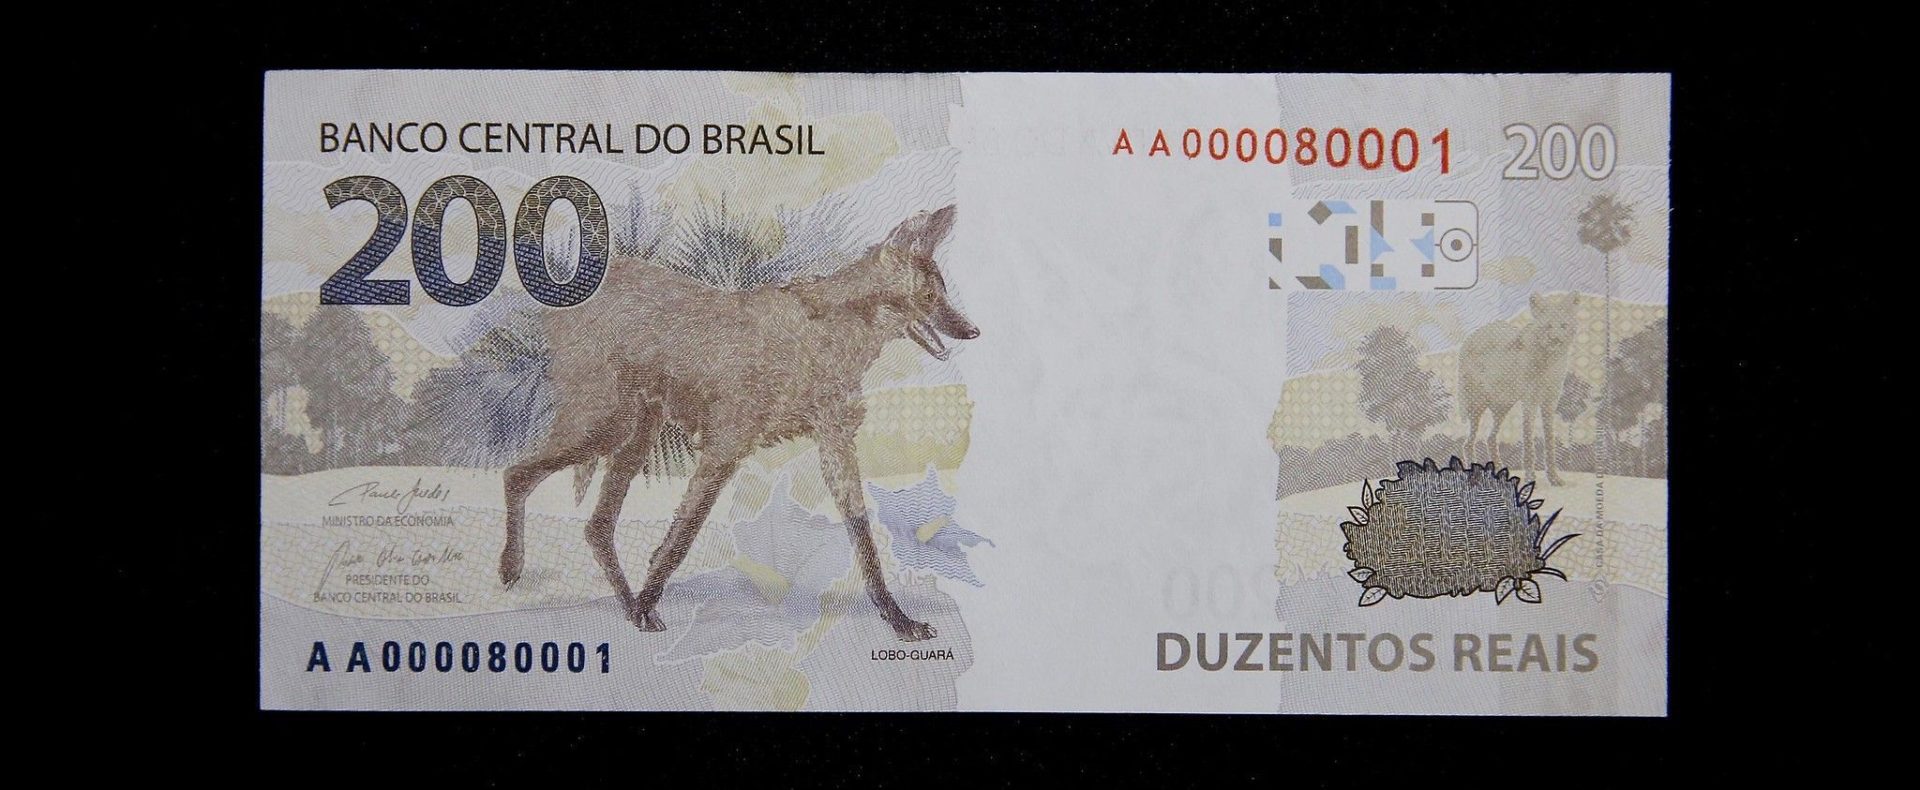 nota de R$ 200